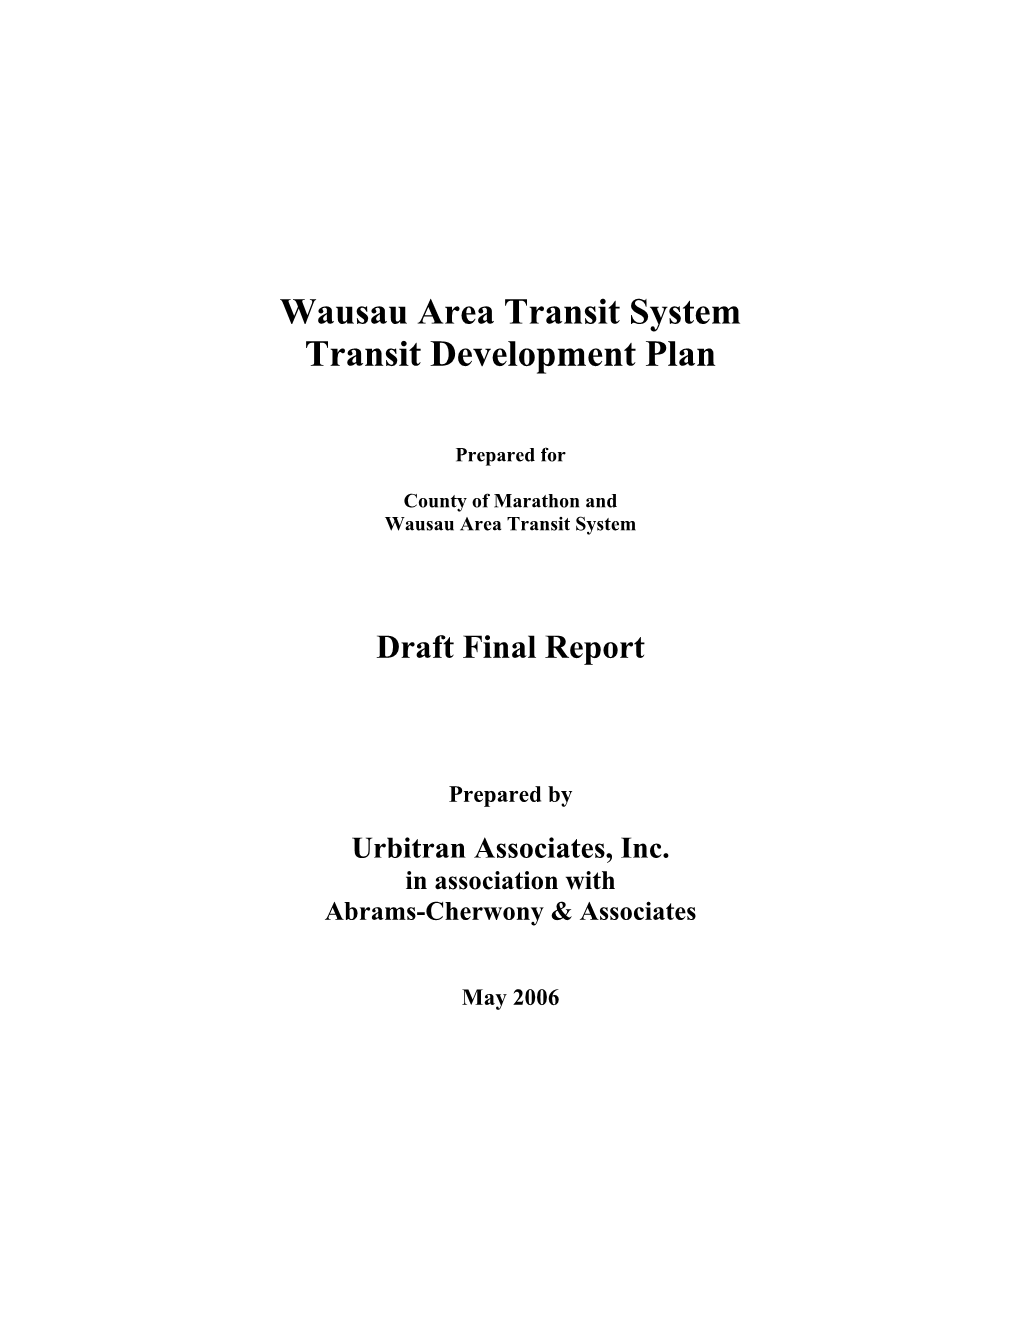 Wausau Area Transit System Transit Development Plan